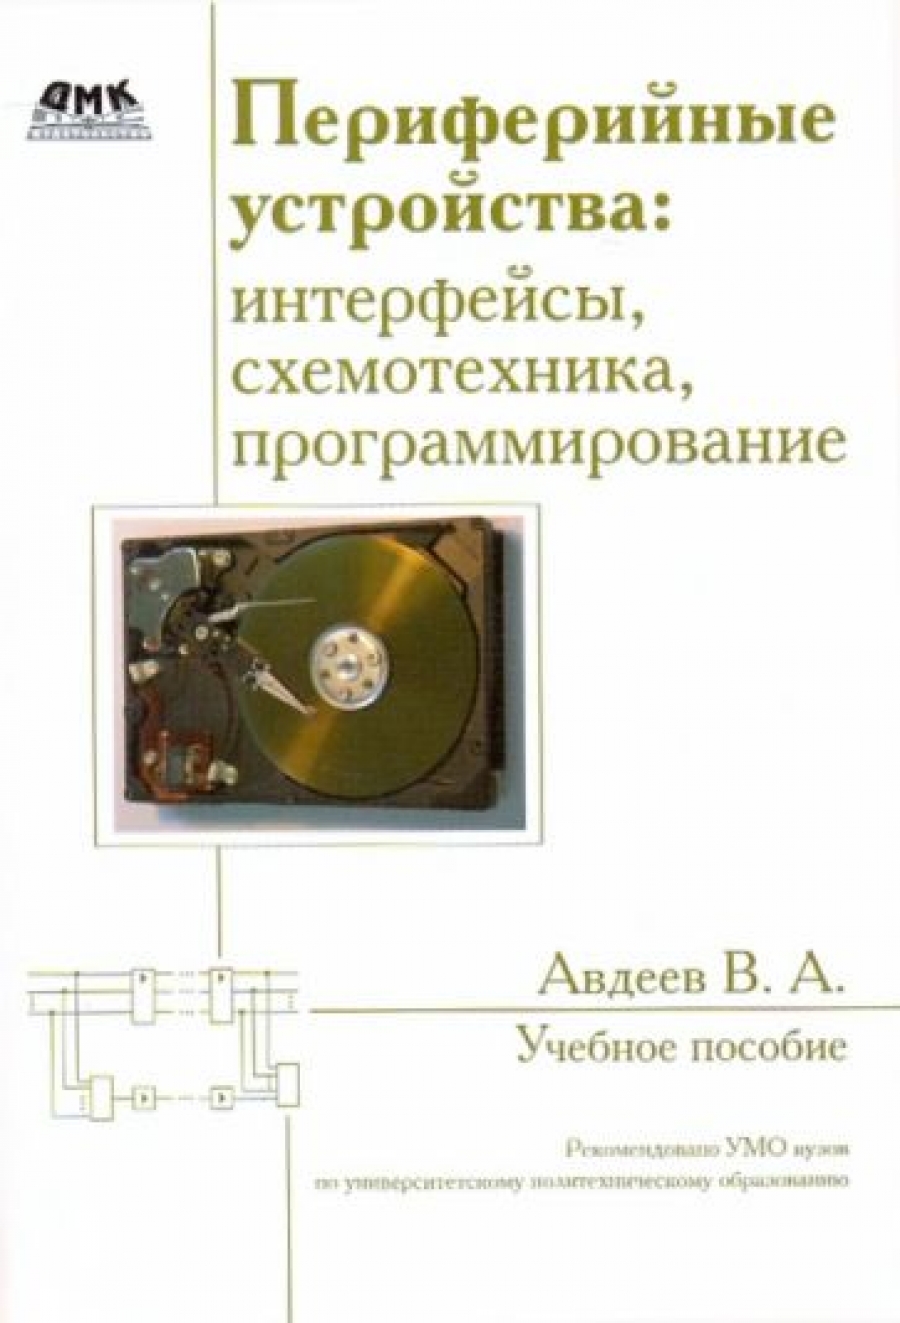 Авдеев В. Периферийные устройства: интерфейсы, схемотехника, программирование 